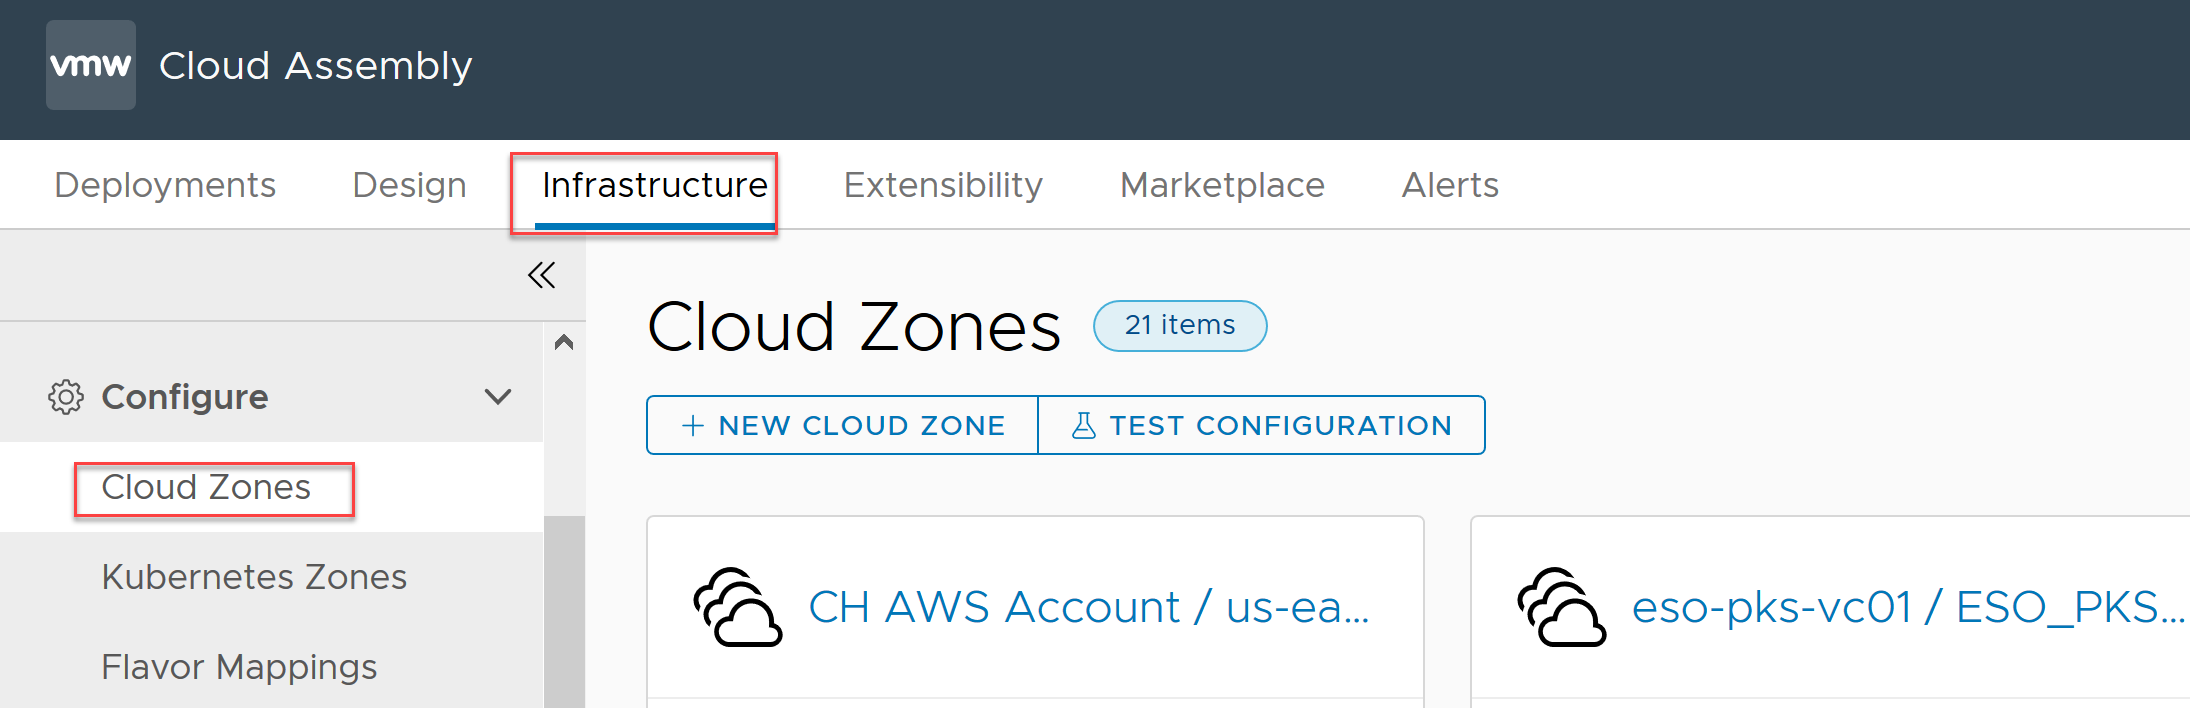 Bildschirm, in dem das Öffnen einer Cloud-Zone dargestellt ist, kein Name angegeben